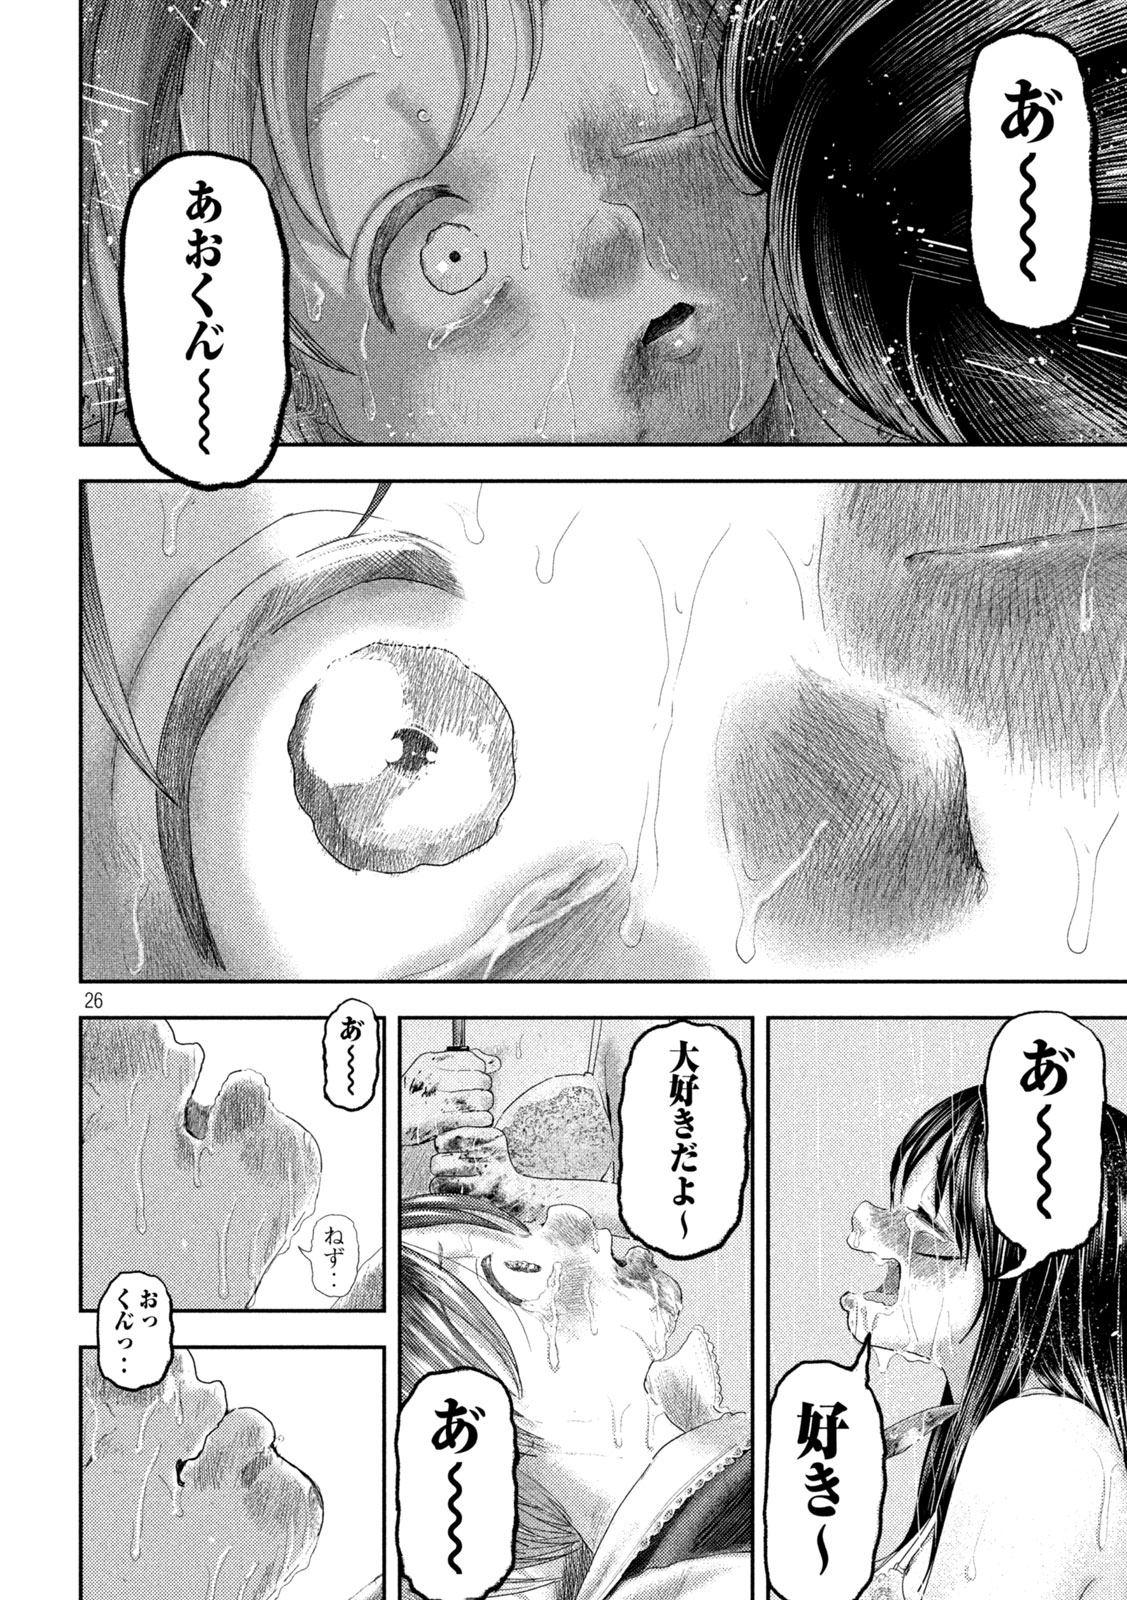 Nezumi no Koi - Chapter 26 - Page 26